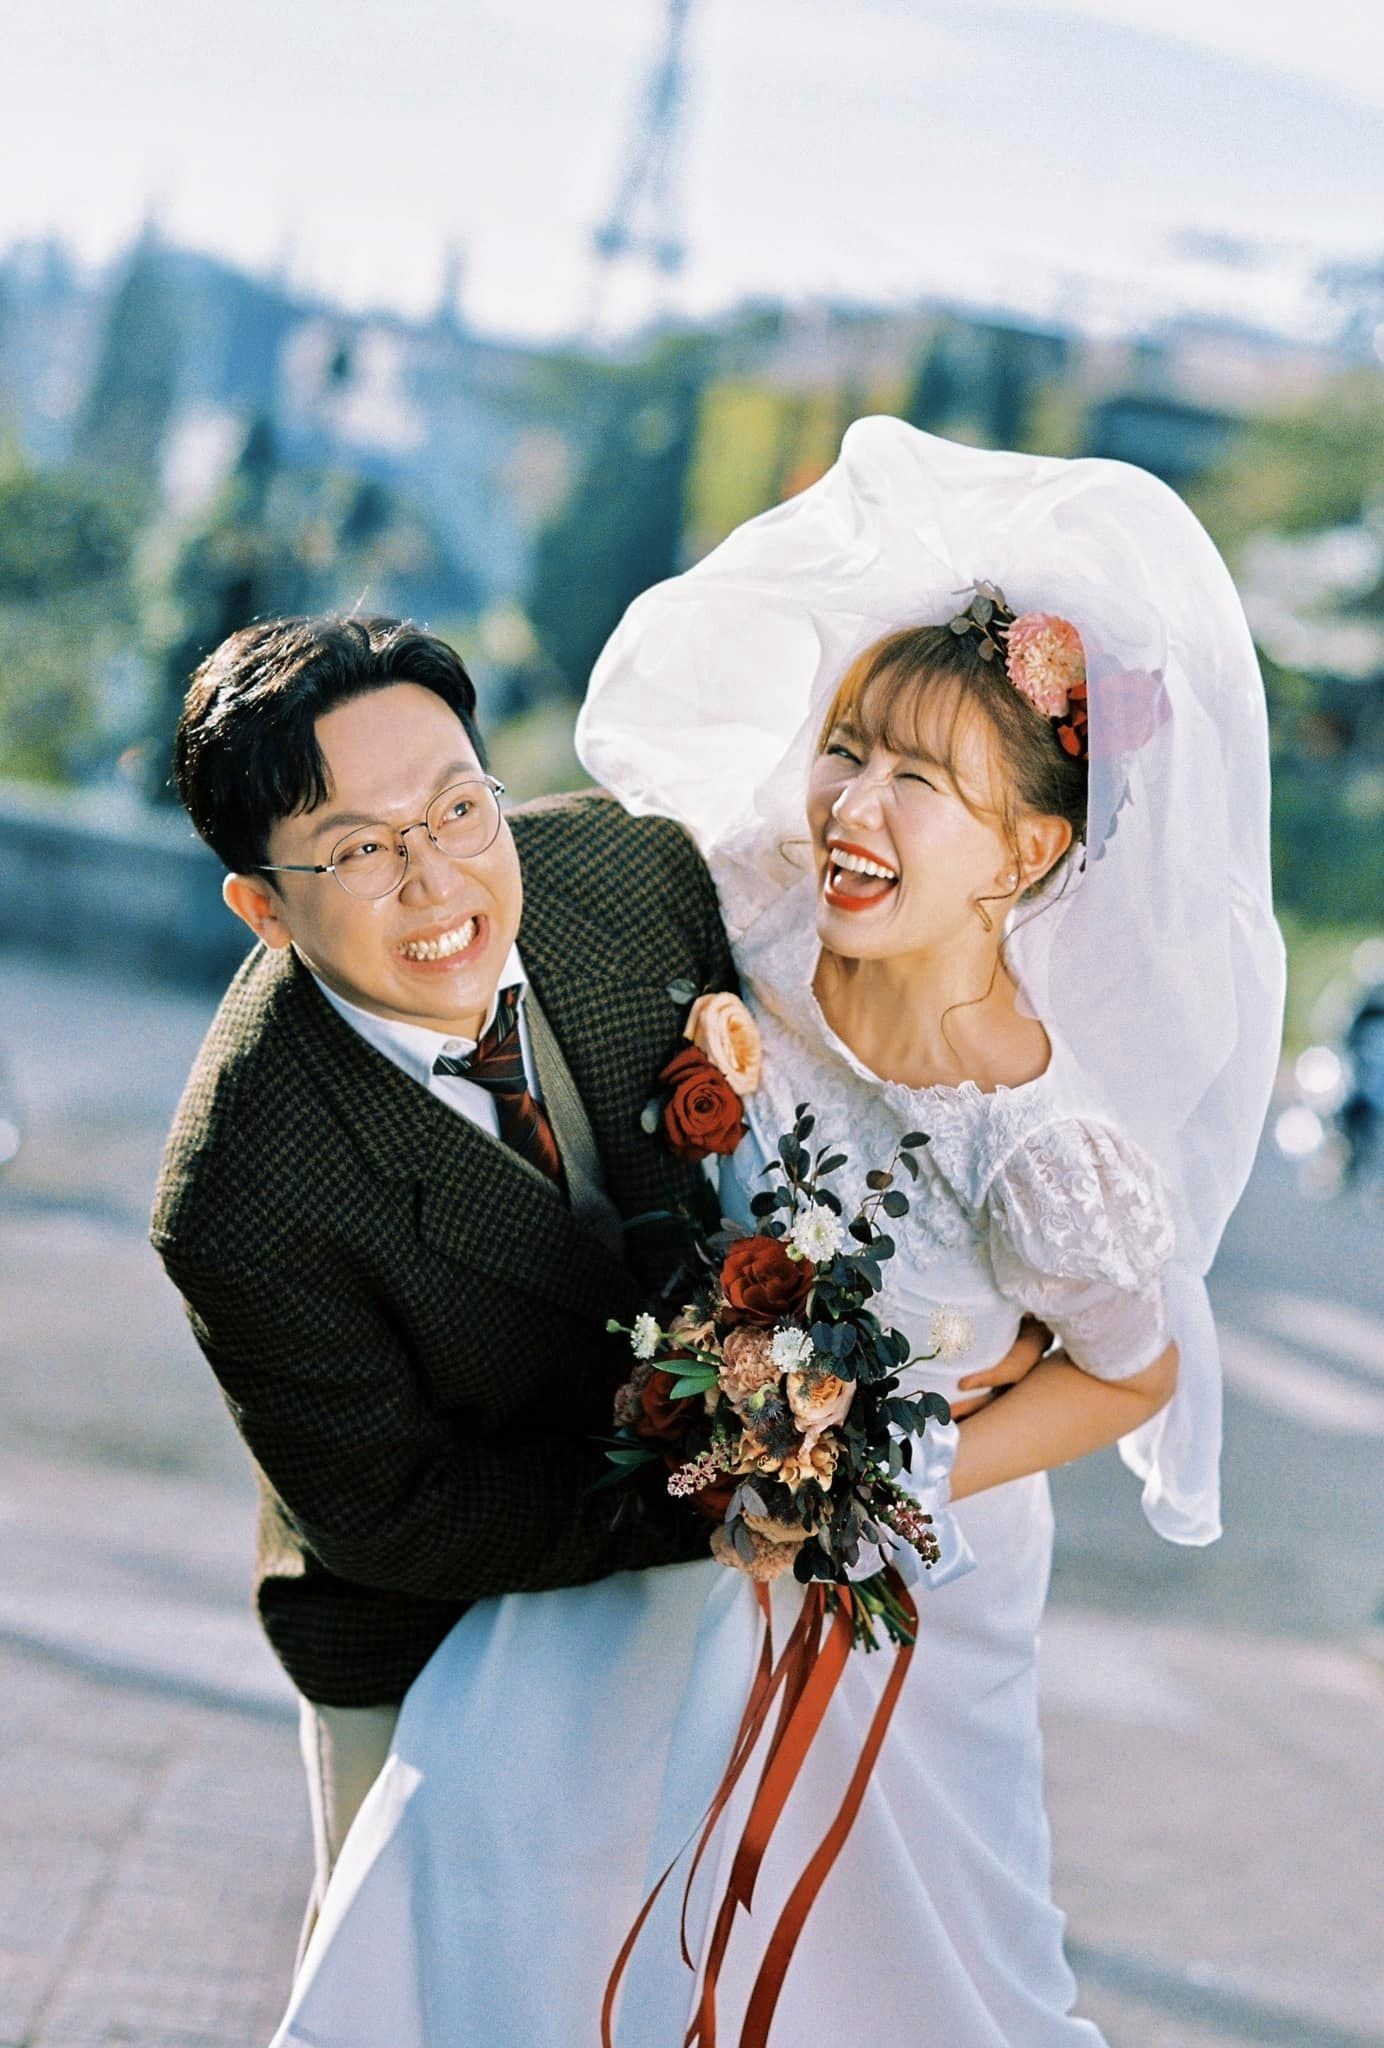 View -             Trần Thành - Hari Won tung ảnh cưới theo concept hoài cổ, dân mạng mỏi tay thả tim    